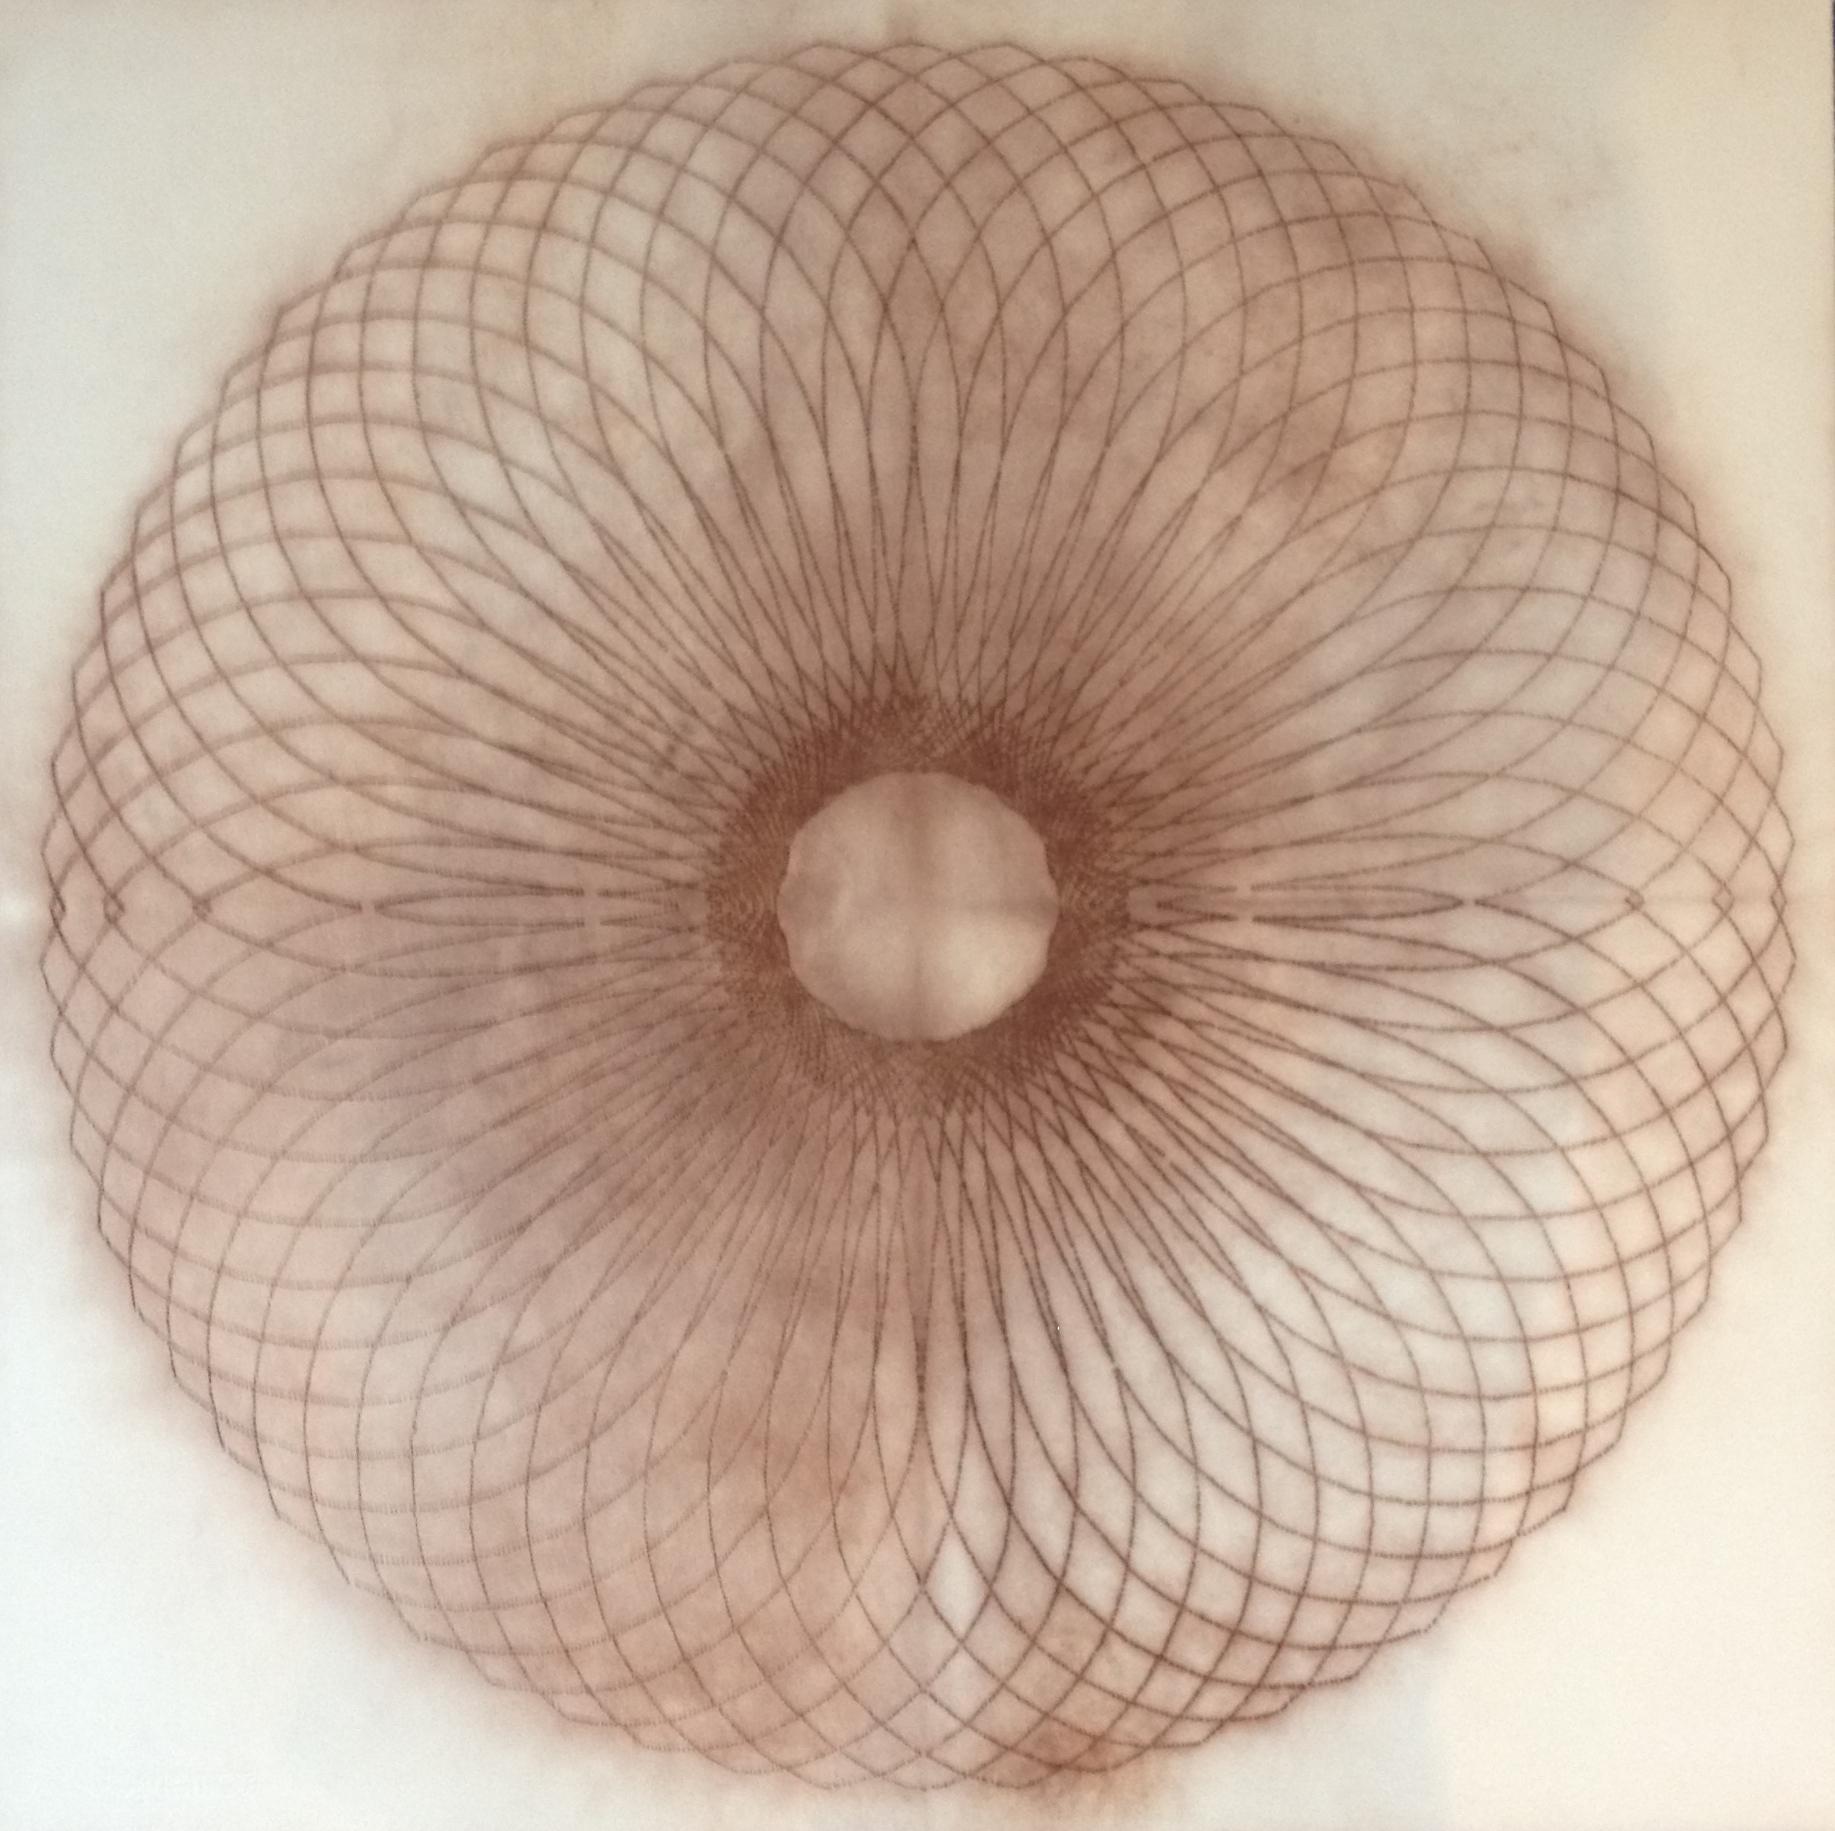 Mary Judge Abstract Drawing - Exotic Hex Series 12 01, Square Reddish Brown Circular Mandala Line Drawing